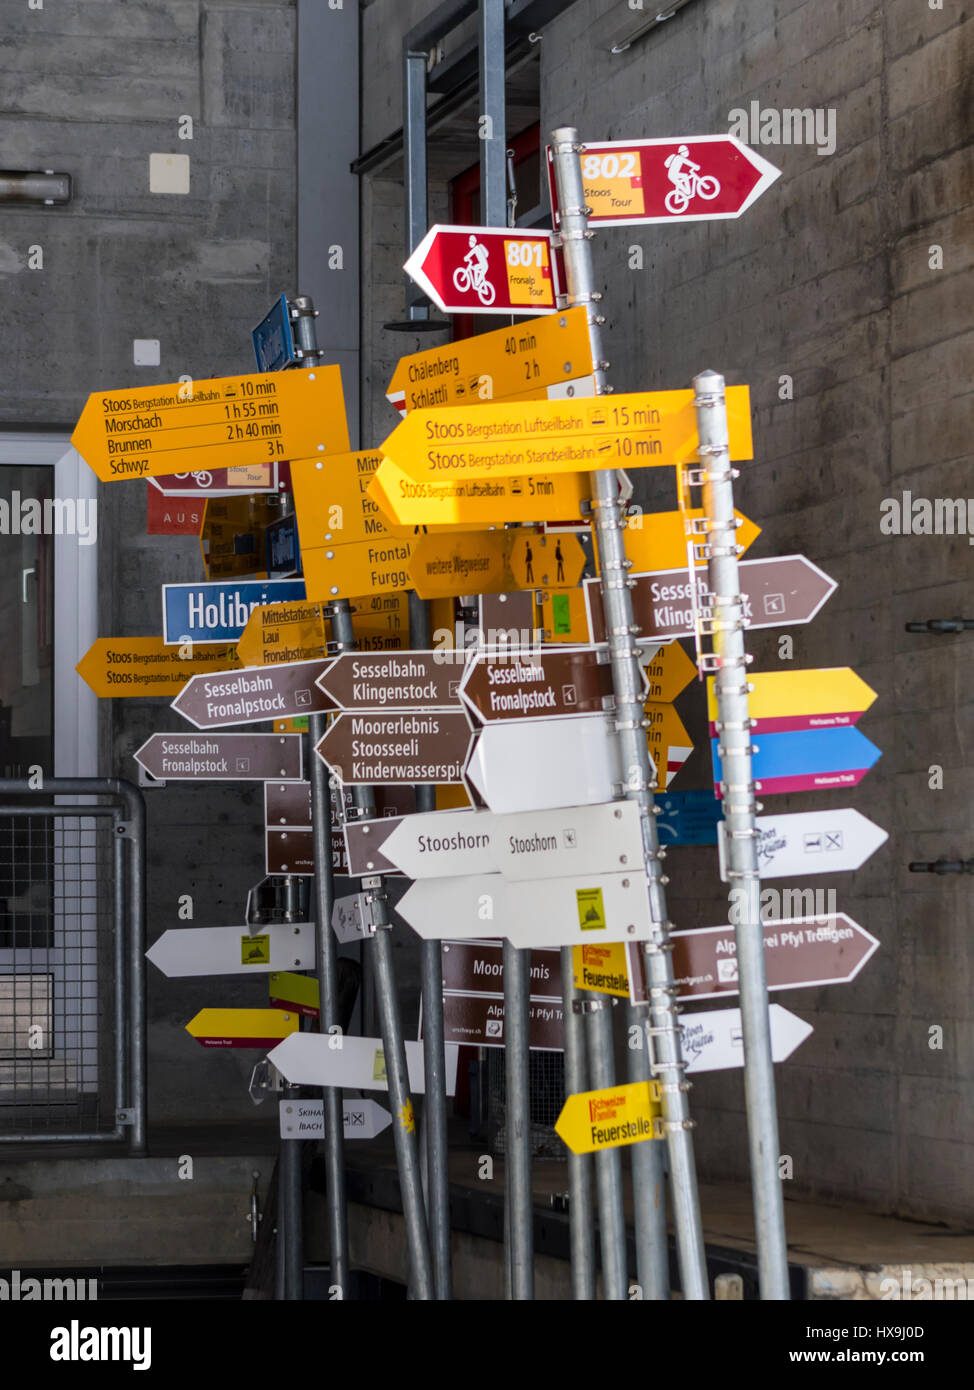 Muchos Suizos senderismo señales con la superposición de señales almacenadas para su posterior reutilización. Foto de stock